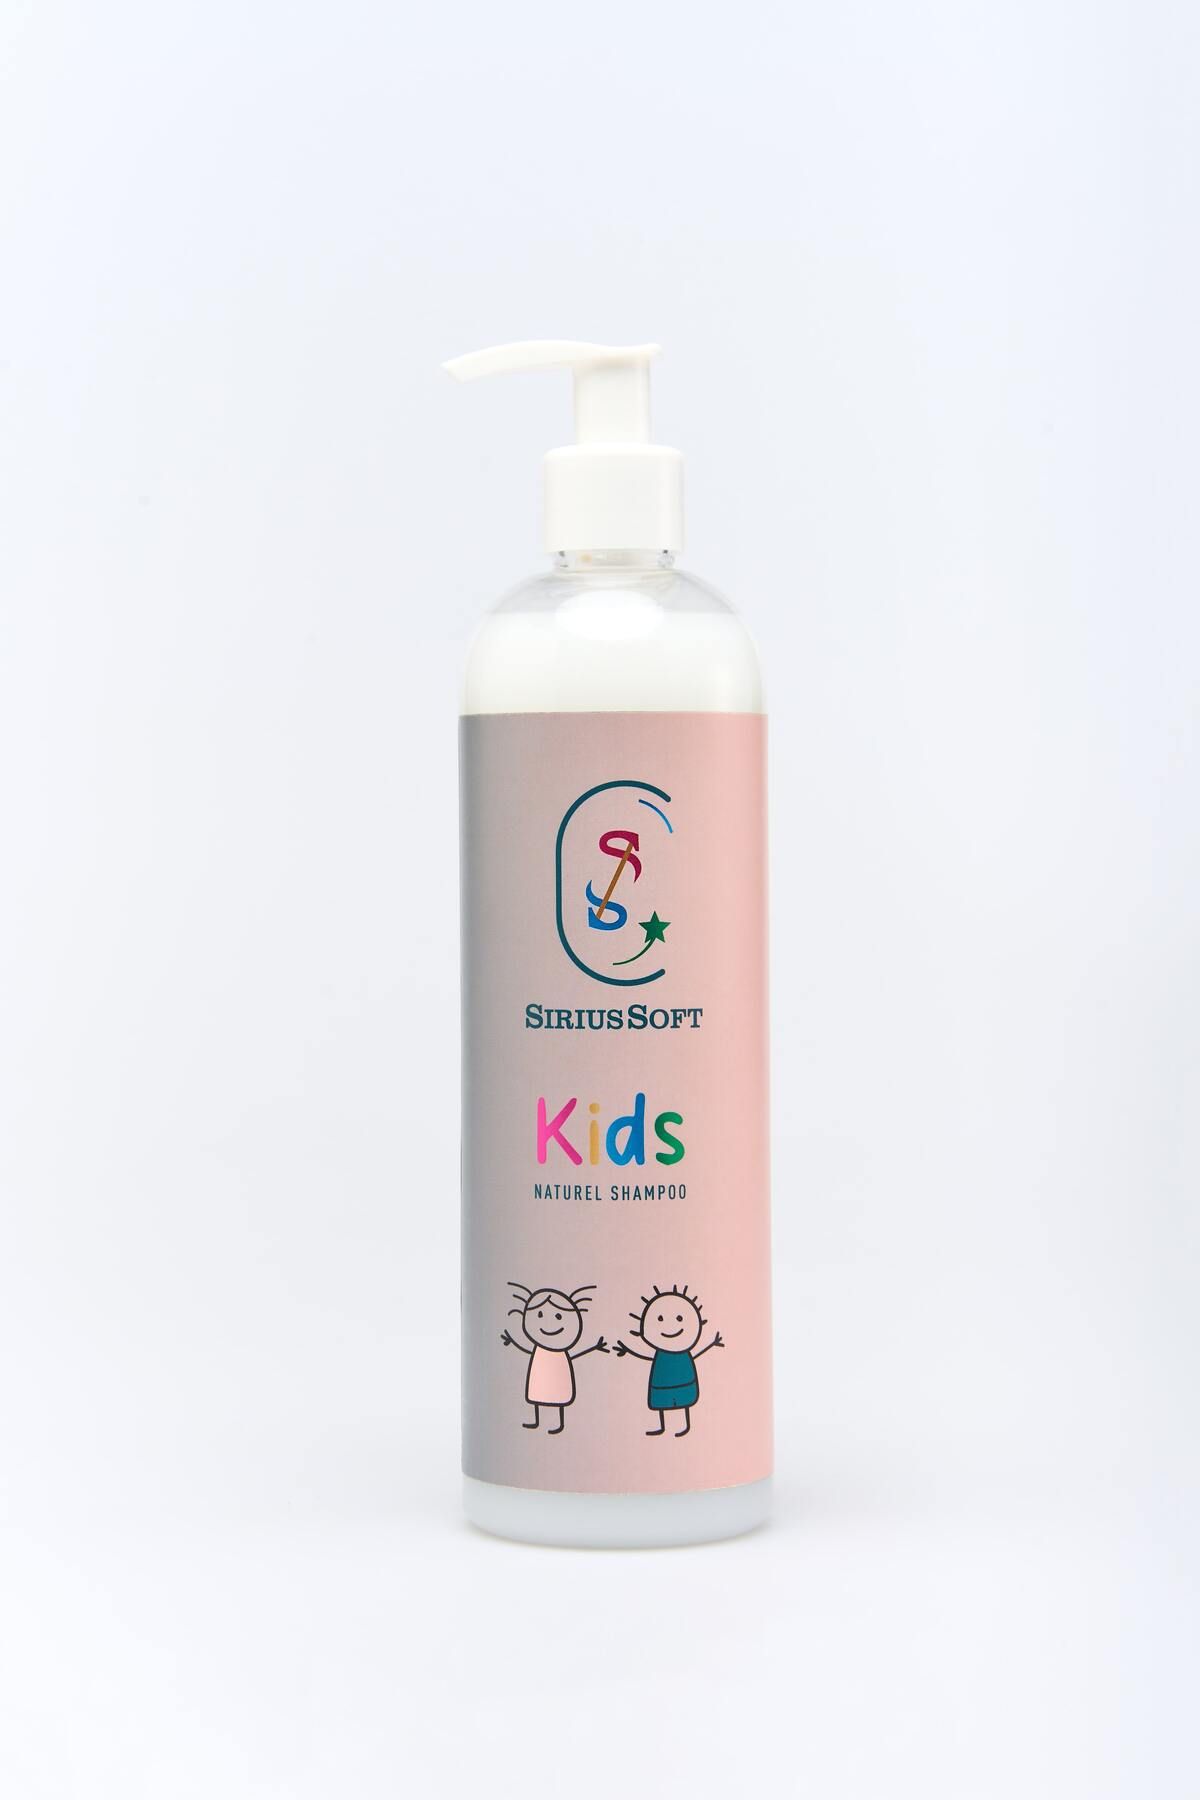 SiriusSoft Doğal Çocuk Erkek Ve Kız Çocuklarına Özel Bakım Şampuan 250 ml